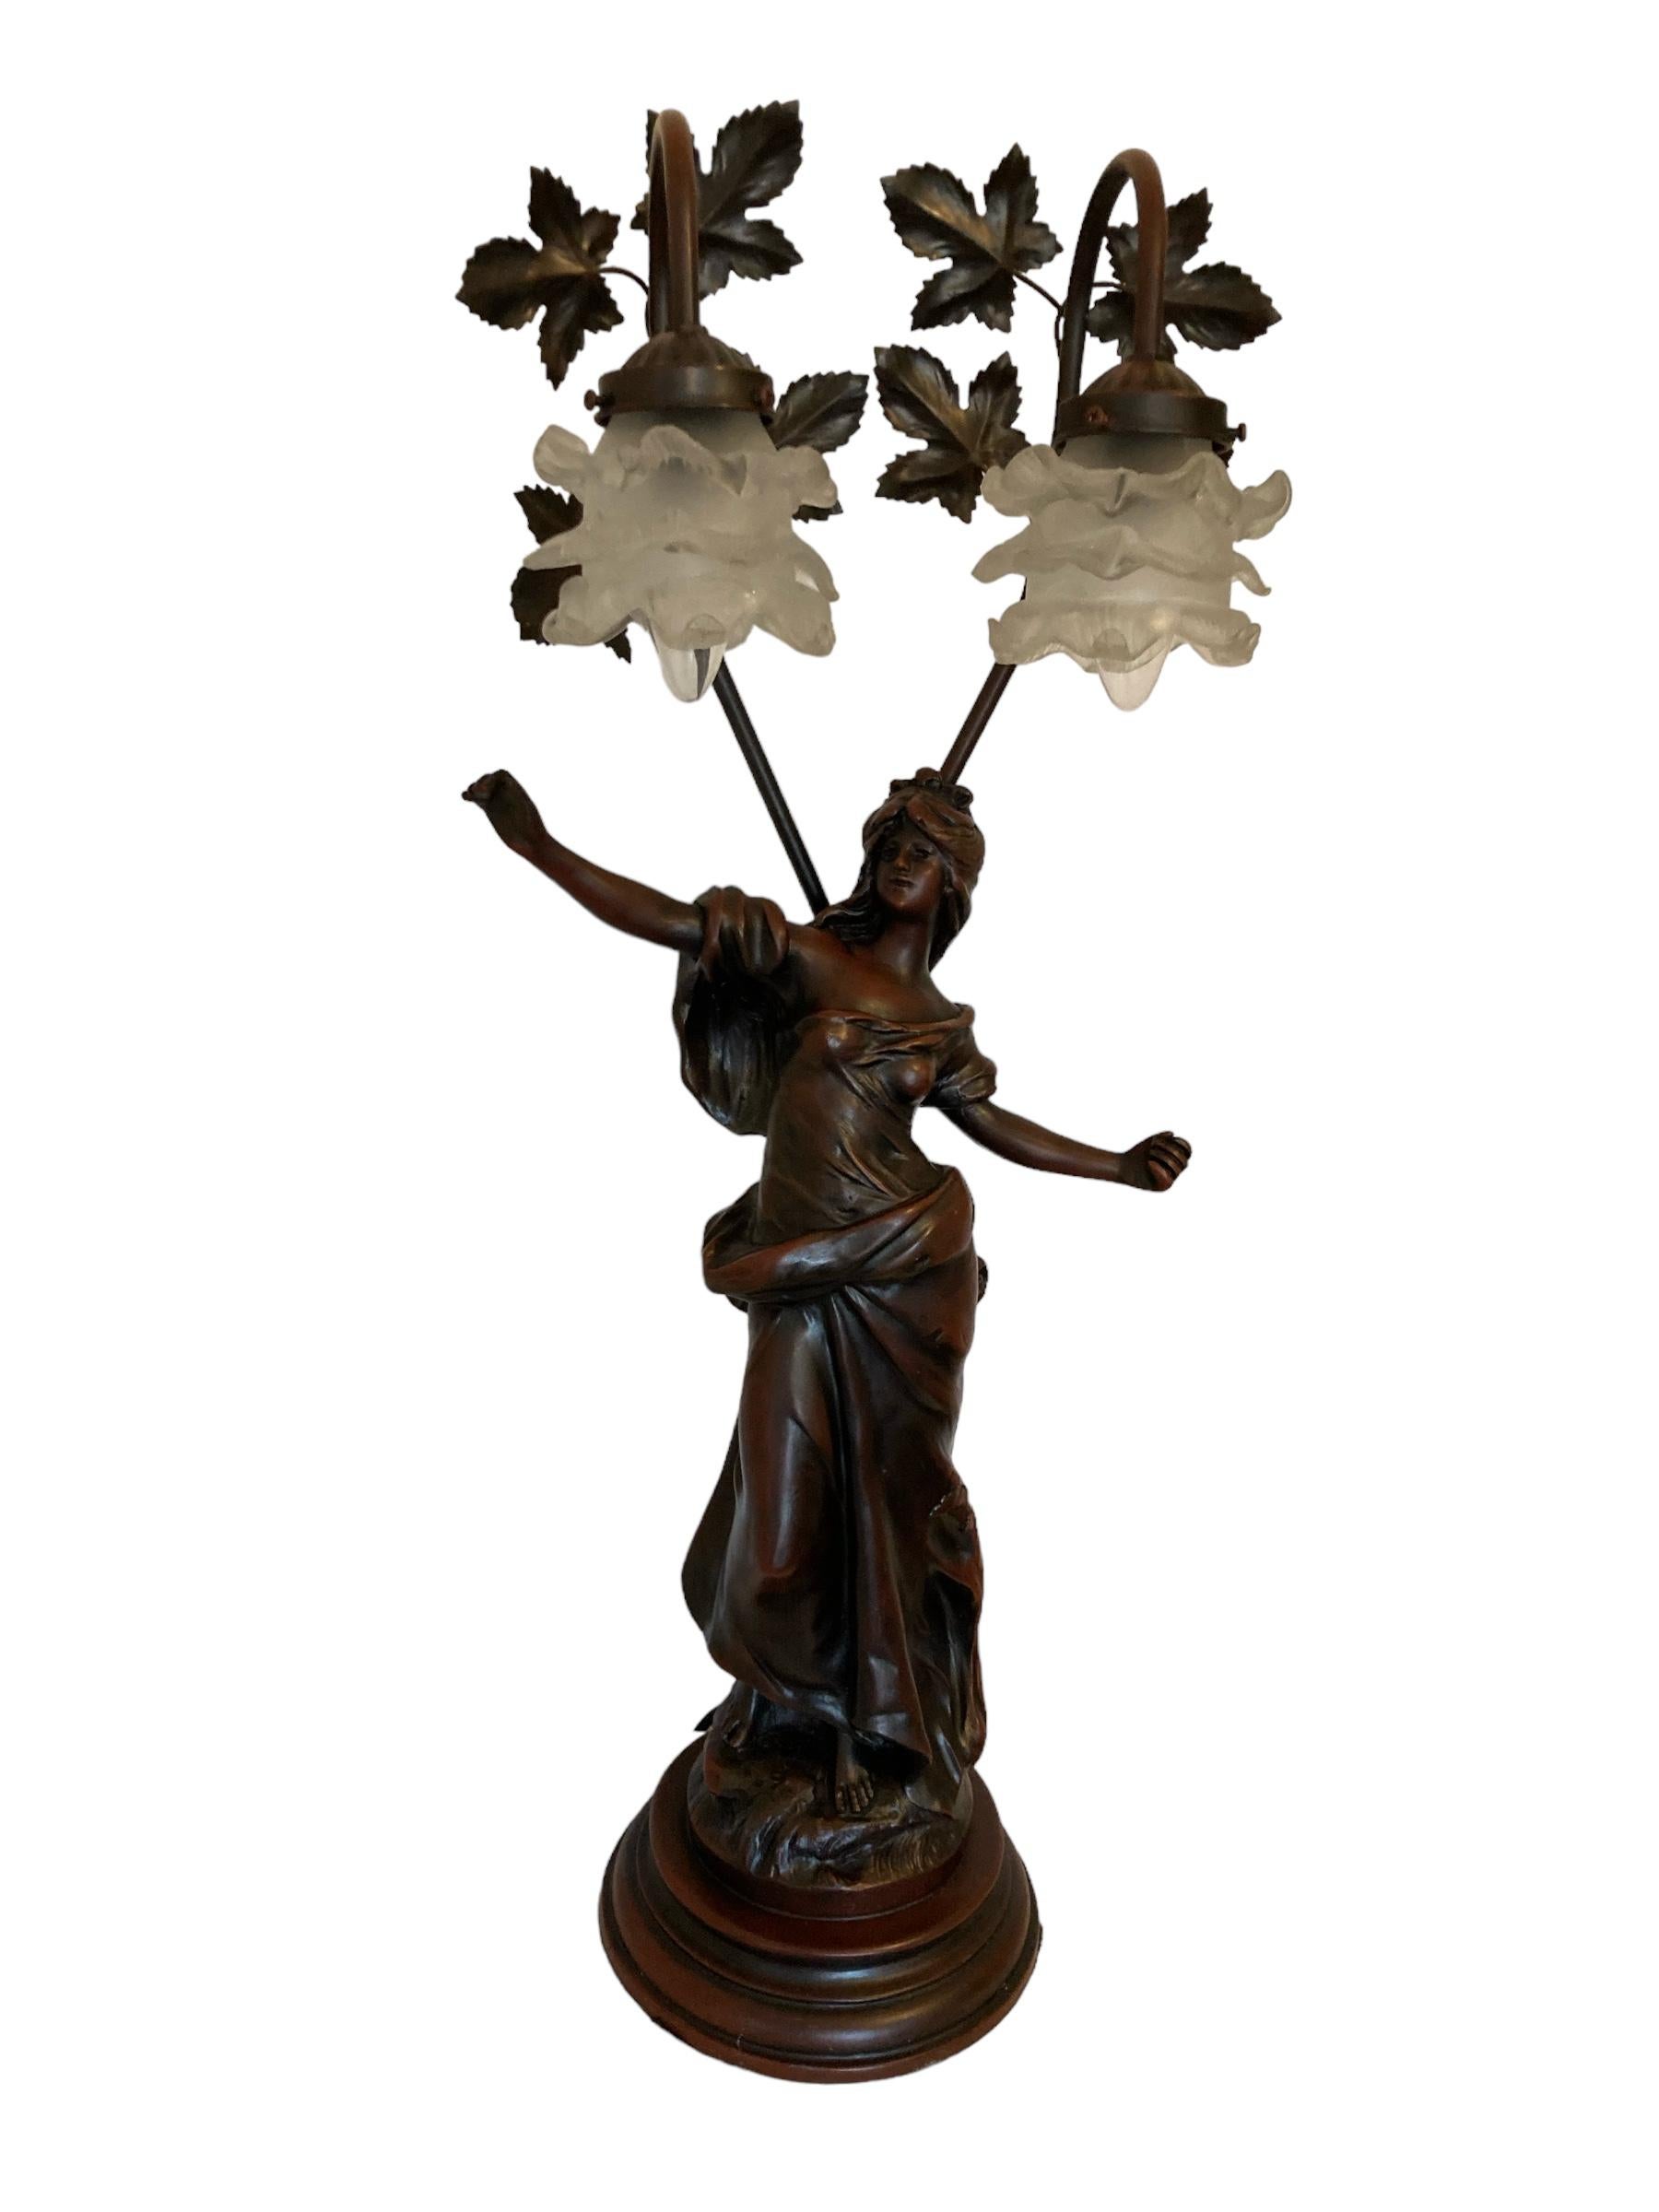 Lámpara de sobremesa vintage de escultura figurativa de Auguste Moreau con pantallas de cristal. La escultura está hecha de espelta, con un acabado de bronce antiguo. Esculturas de Louis Auguste Moreau (1855-1919) que, junto con su hermano Hippolyte